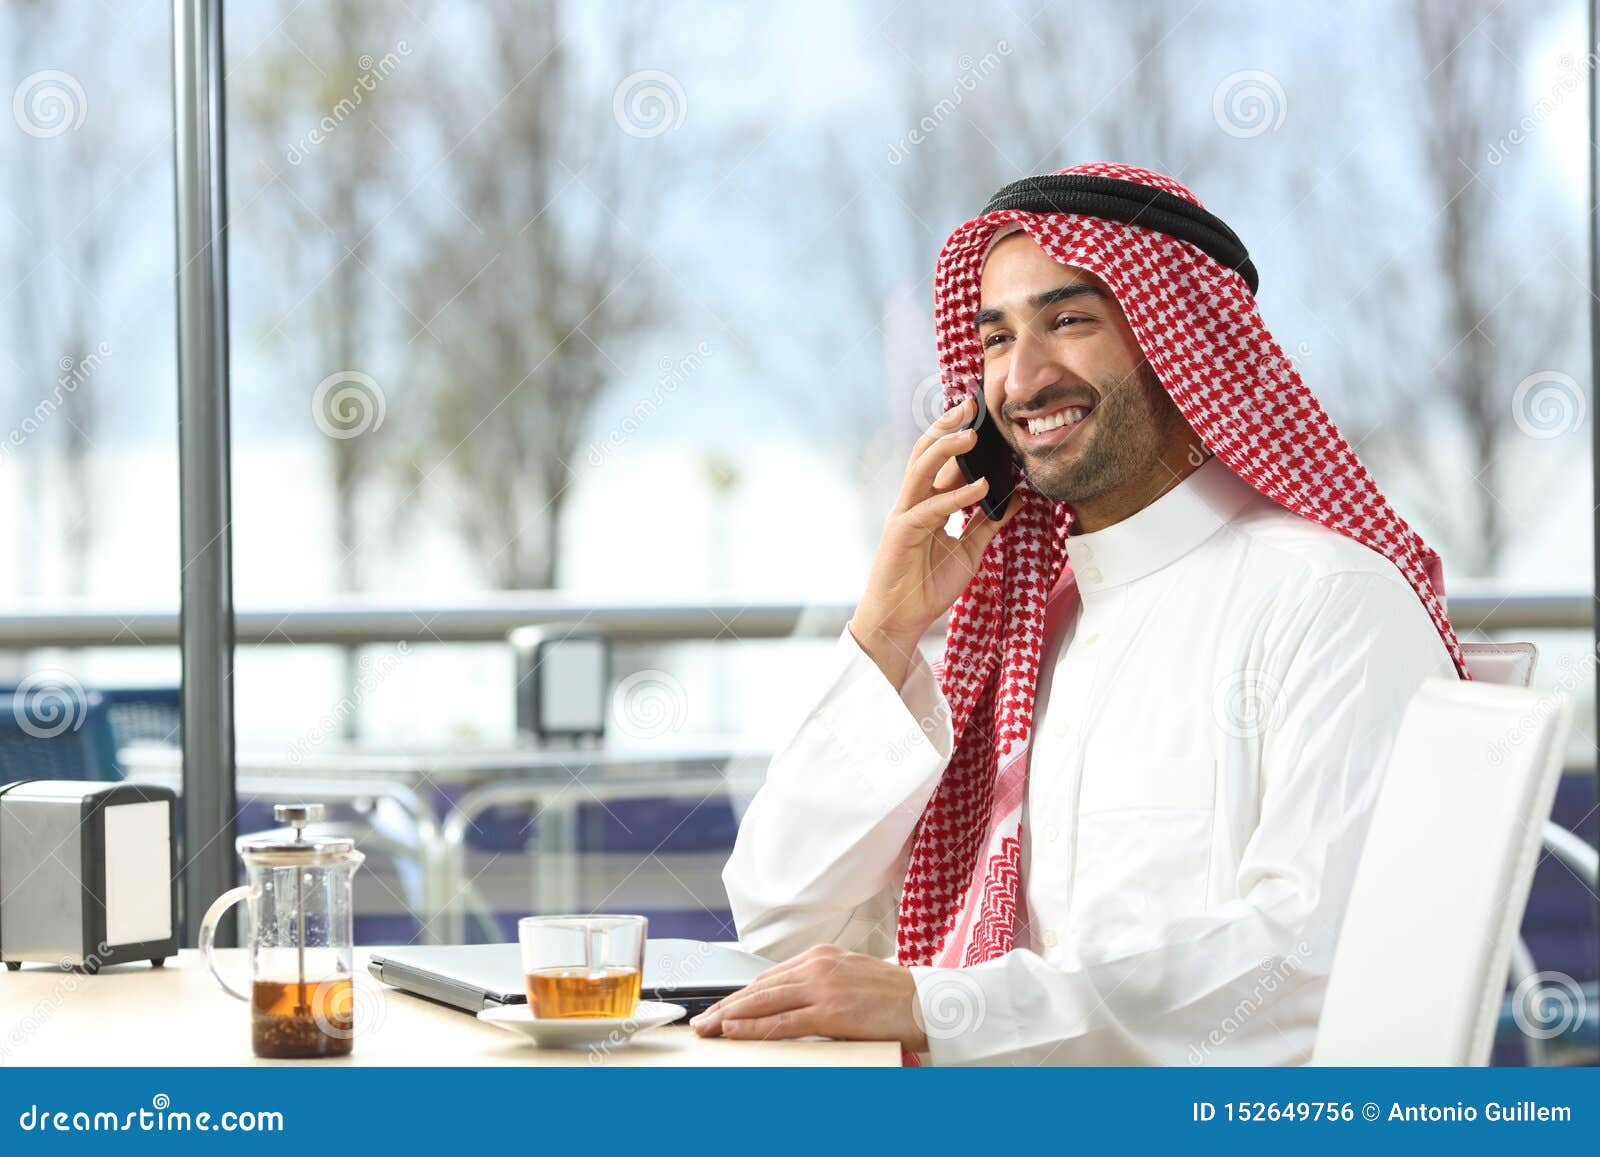 Телефон арабов. Арабы разговаривают. Араб с телефоном. Араб говорит по телефону. Беседа арабов.